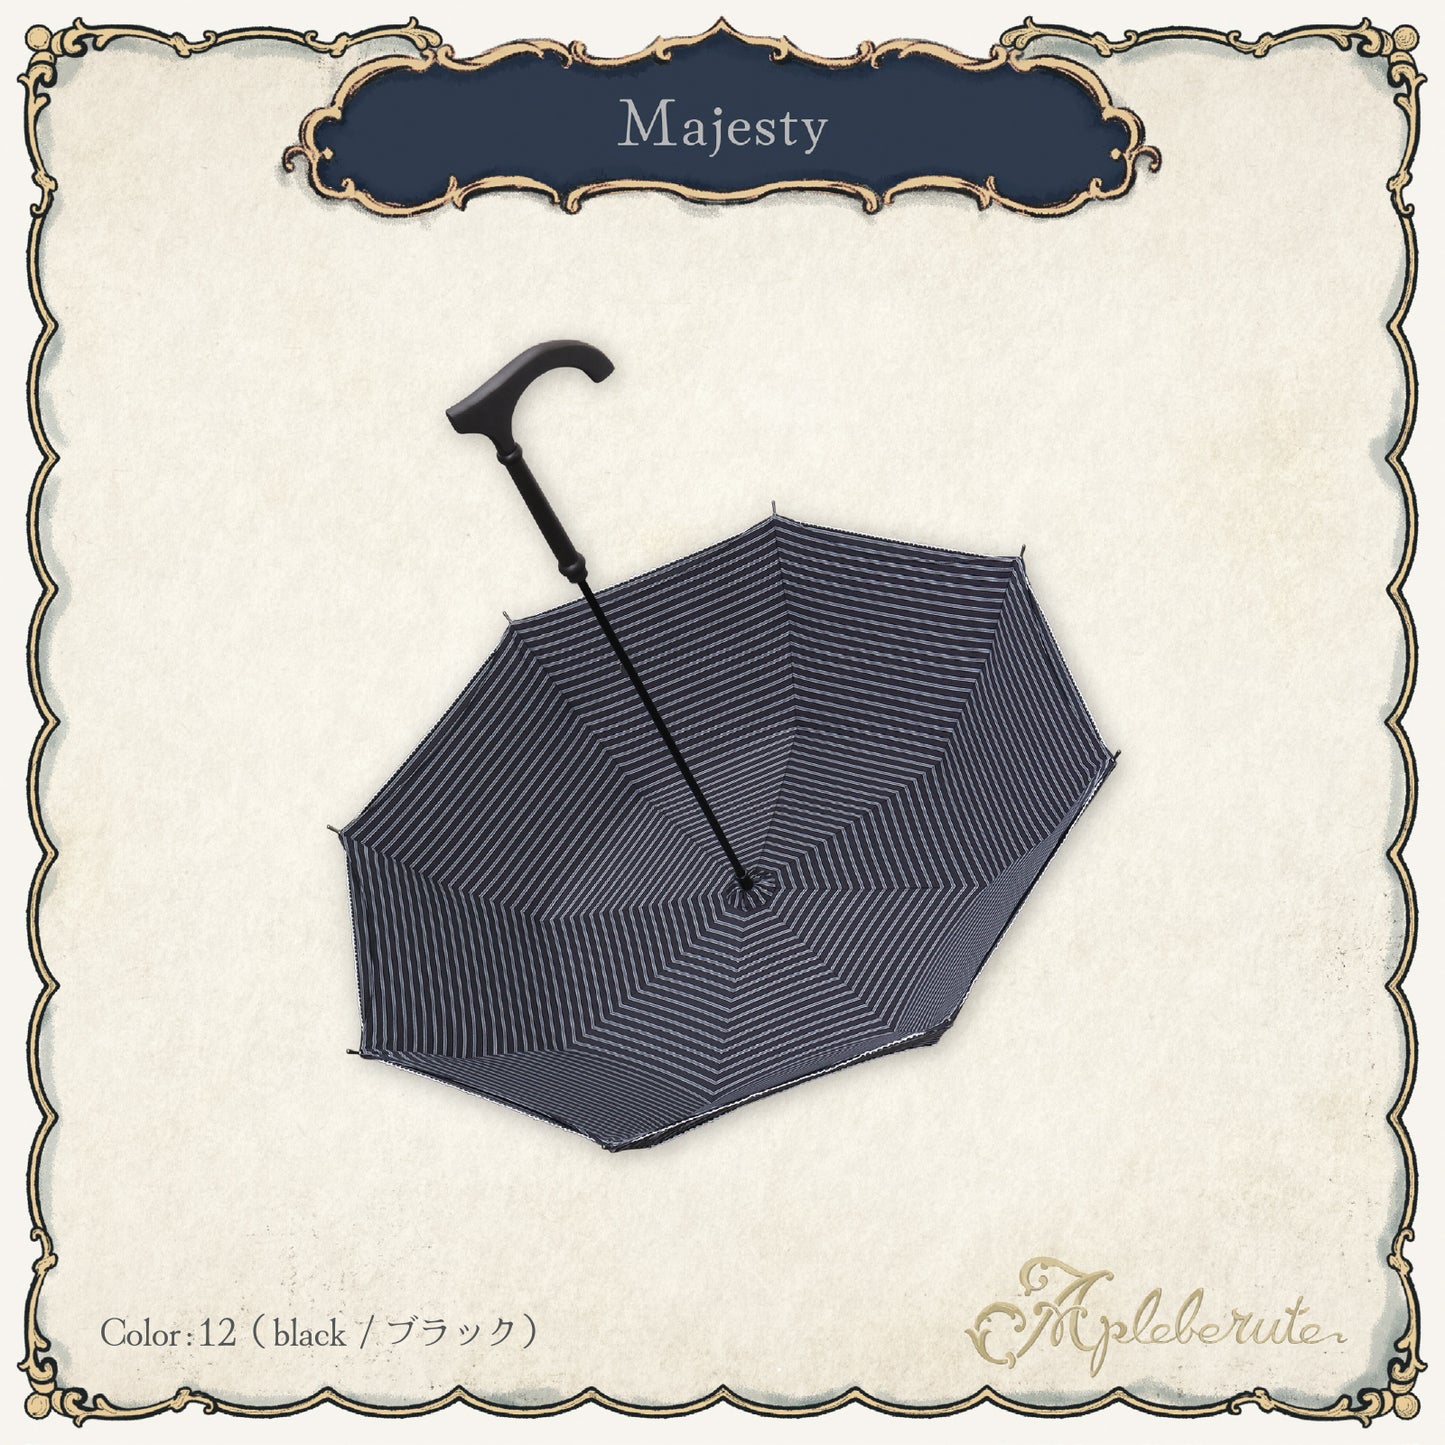 【New】majesty (マジェスティー) - パゴダ 日傘 晴雨兼用 UVカット ショート丈 ストライプ ボーダー